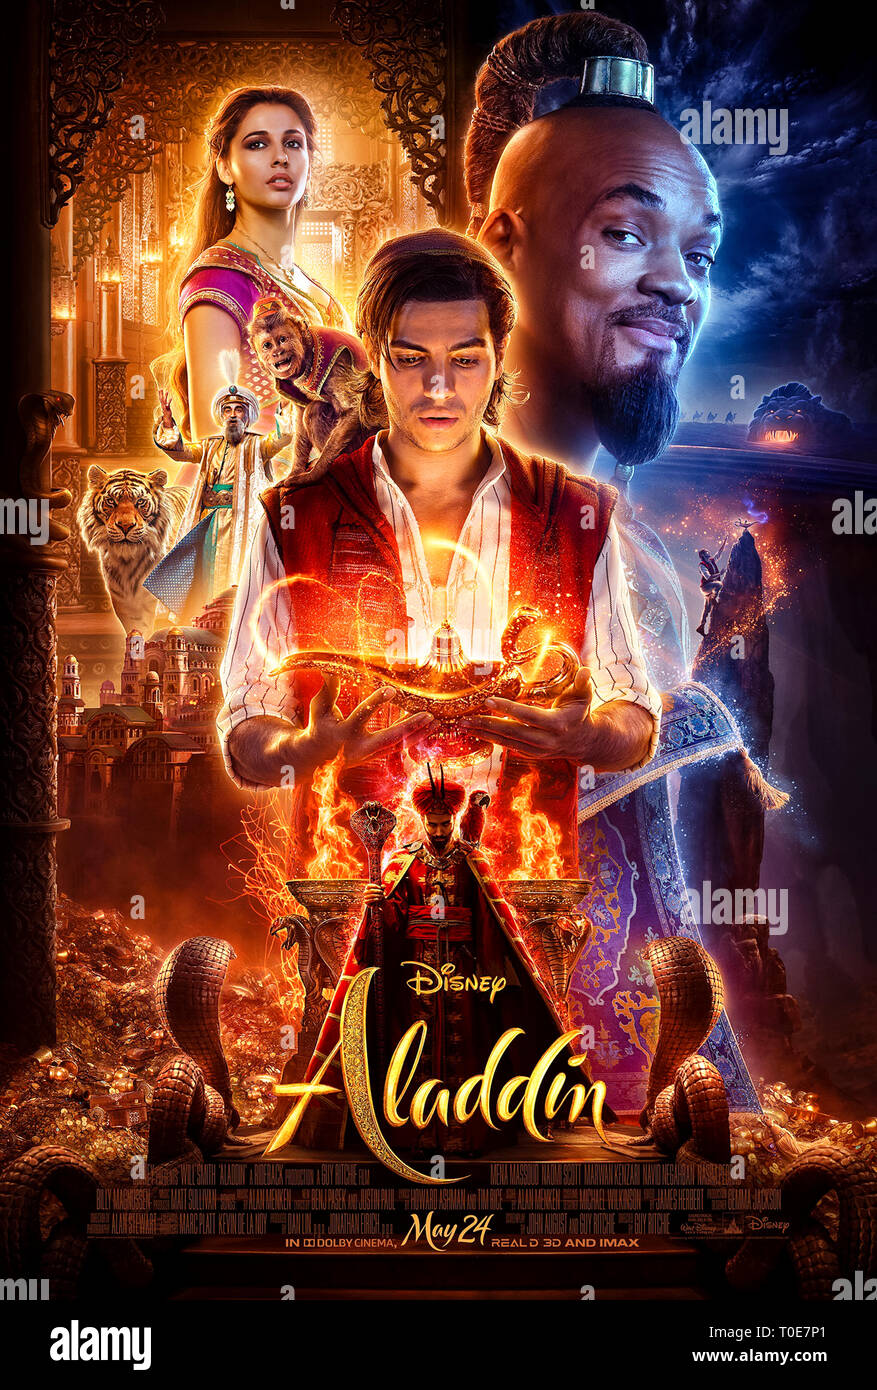 Aladdin (2019) dirigida por Guy Ritchie y protagonizada por Naomi Scott, Mena Massoud, Will Smith. Remake de acción en vivo de la clásica caricatura de Disney. Cartel de una hoja de EE.UU. ***USO EDITORIAL SOLAMENTE***. Crédito: BFA / Walt Disney Foto de stock